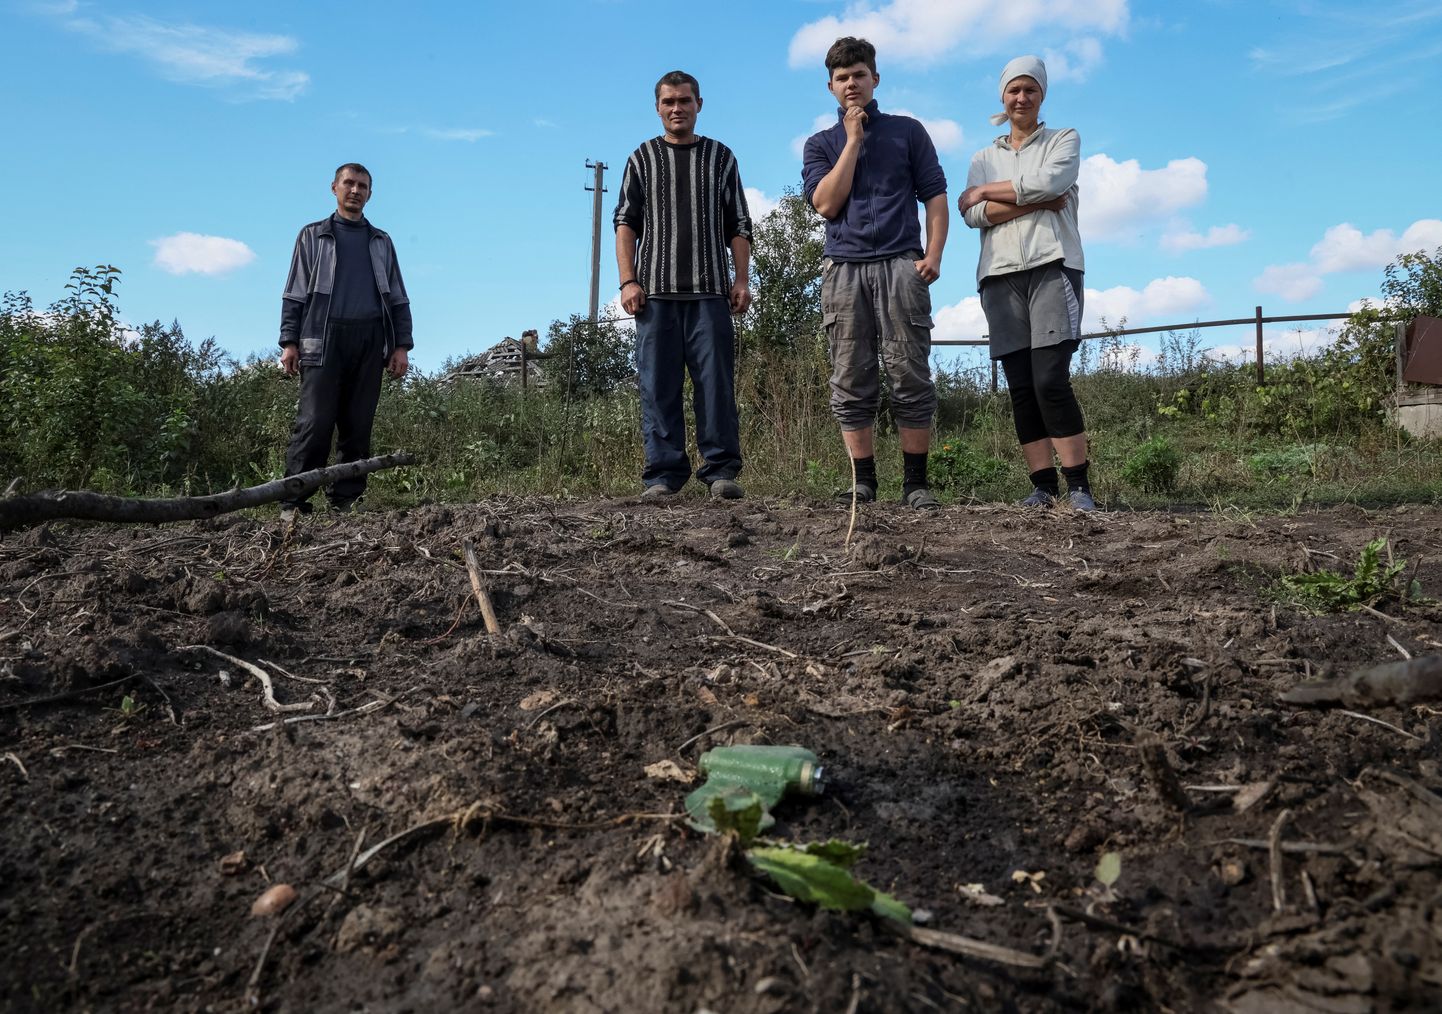 Harkivi oblastis Kamjanka külas leidsid kohalikud jalaväemiini, mida aktiivselt kasutavad mõlemad sõja osapooled. Foto on illustratiivne.